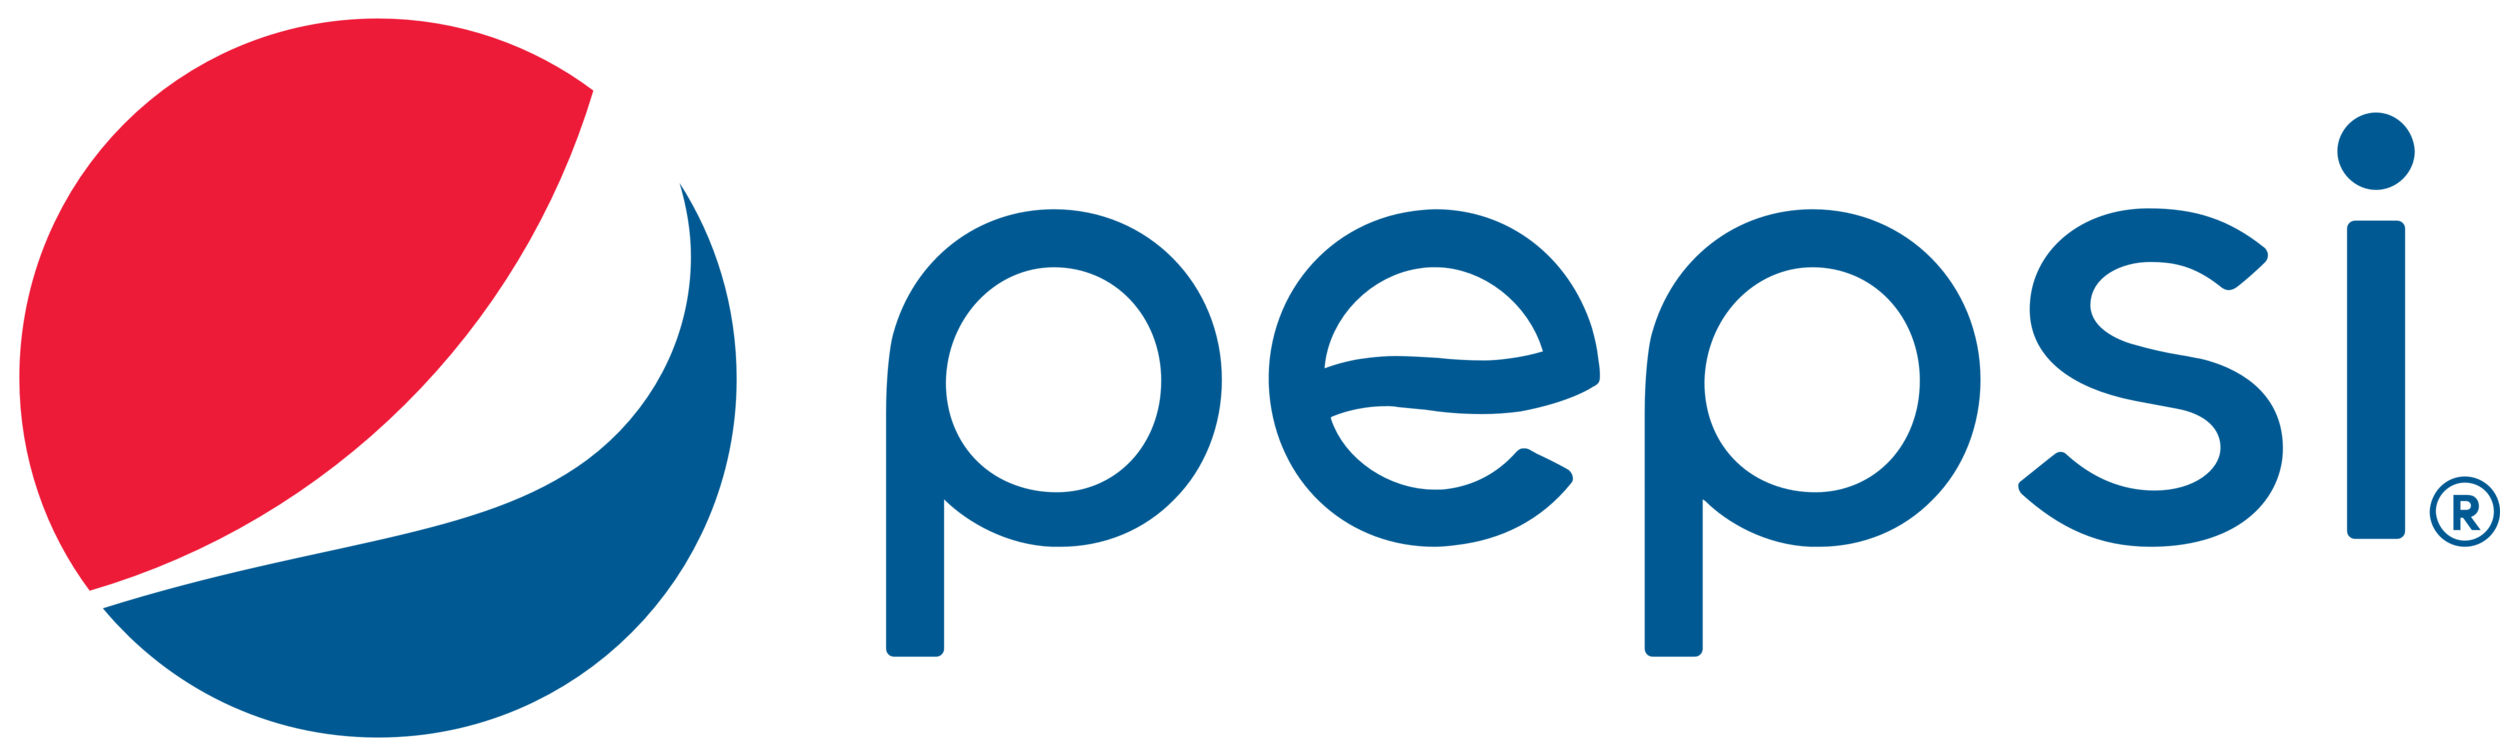 Pepsi_logo_emblem_logotype.png